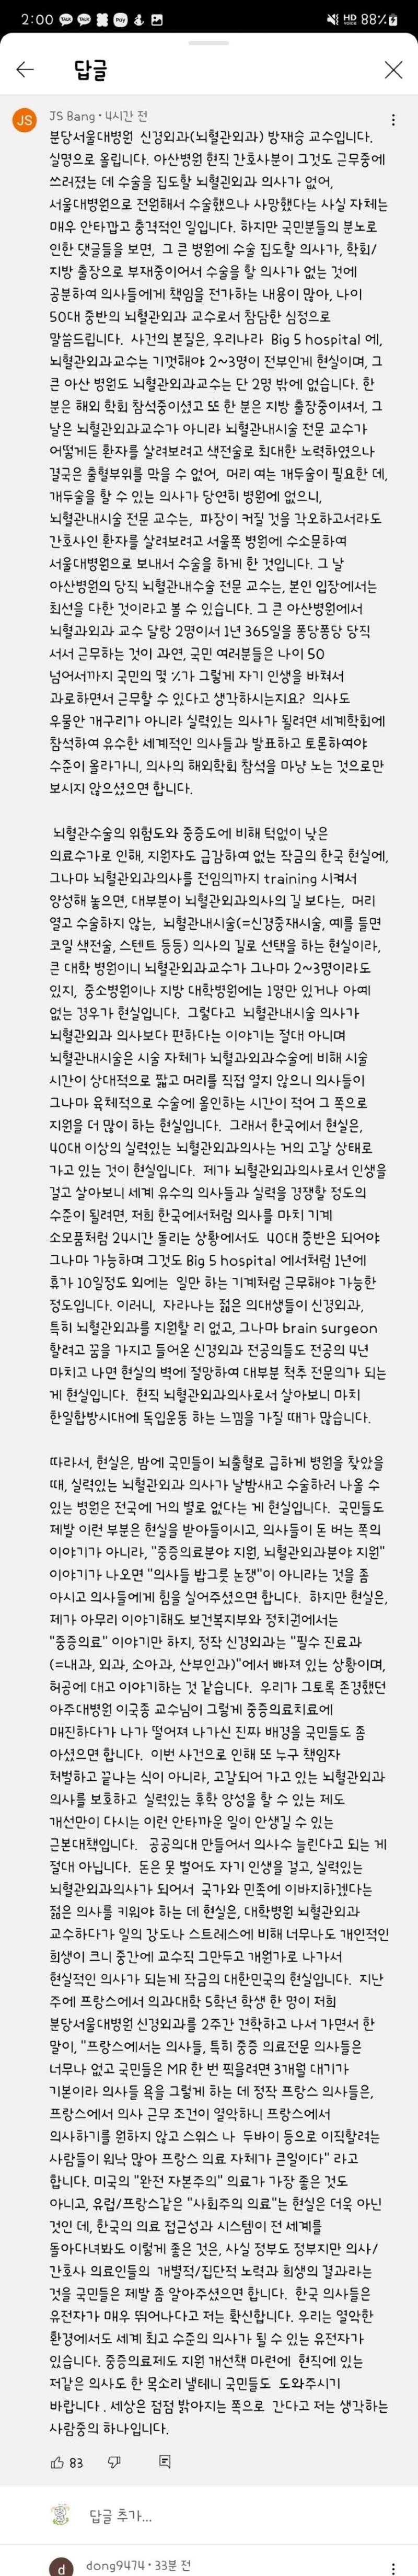 아산병원 간호사 수술한 서울대 의사가 쓴 댓글…